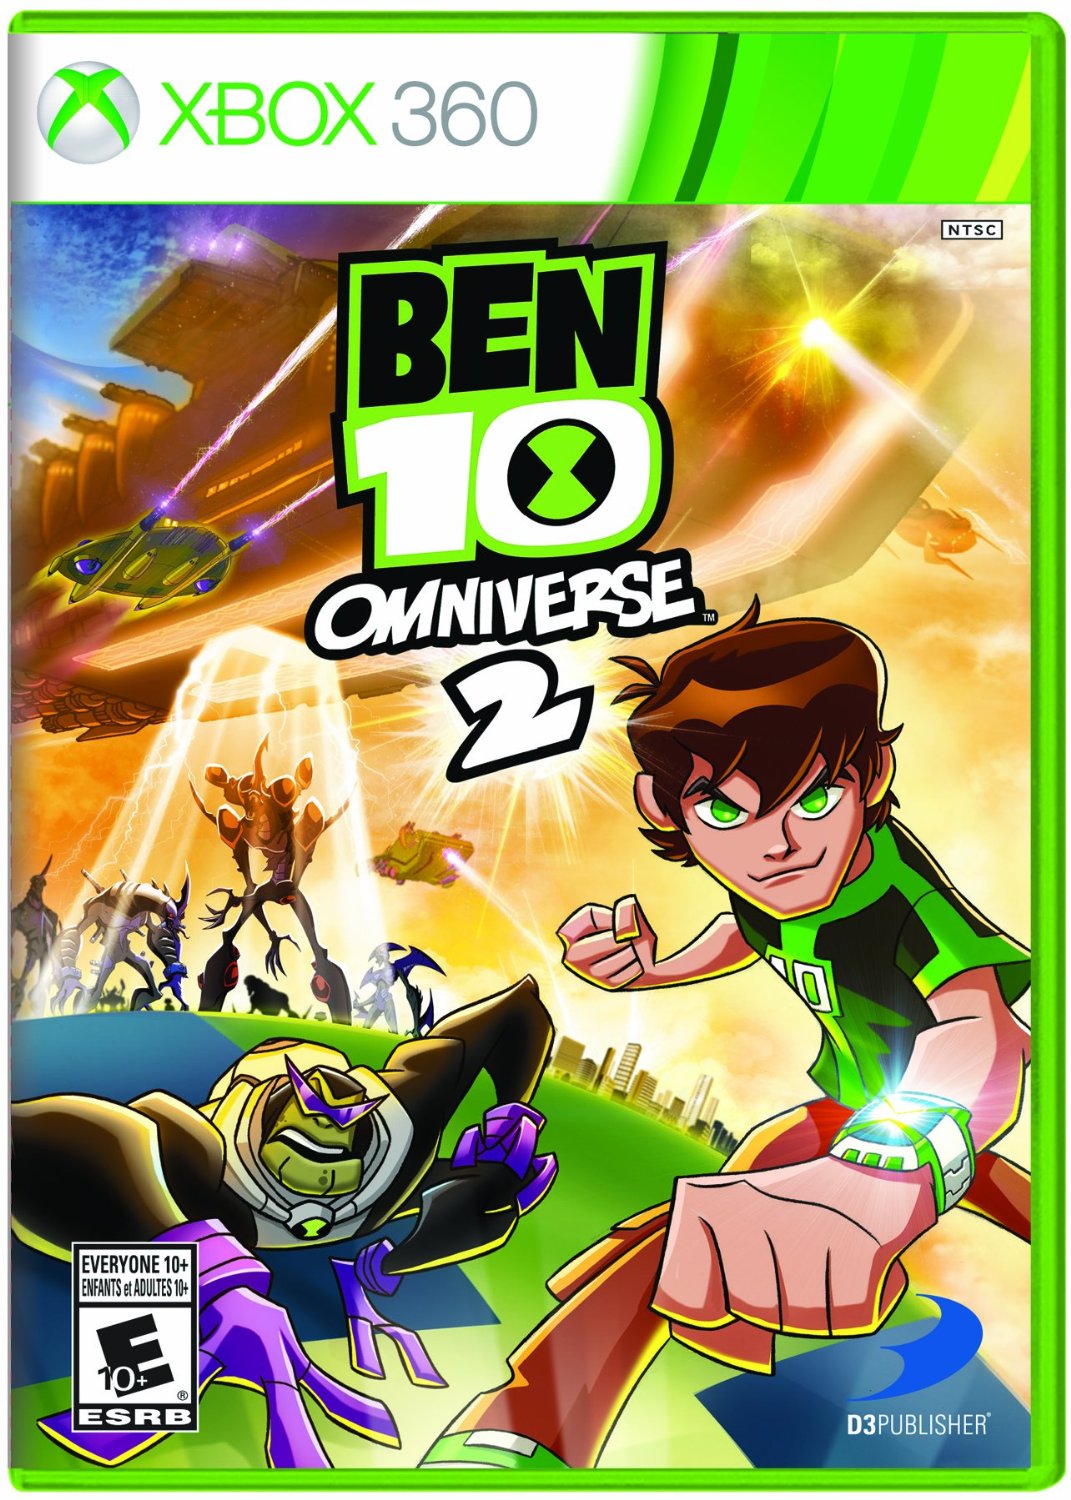 Ben 10 Omniverse 2 – Xbox 360 Only $8.99 (Reg. $29.95)